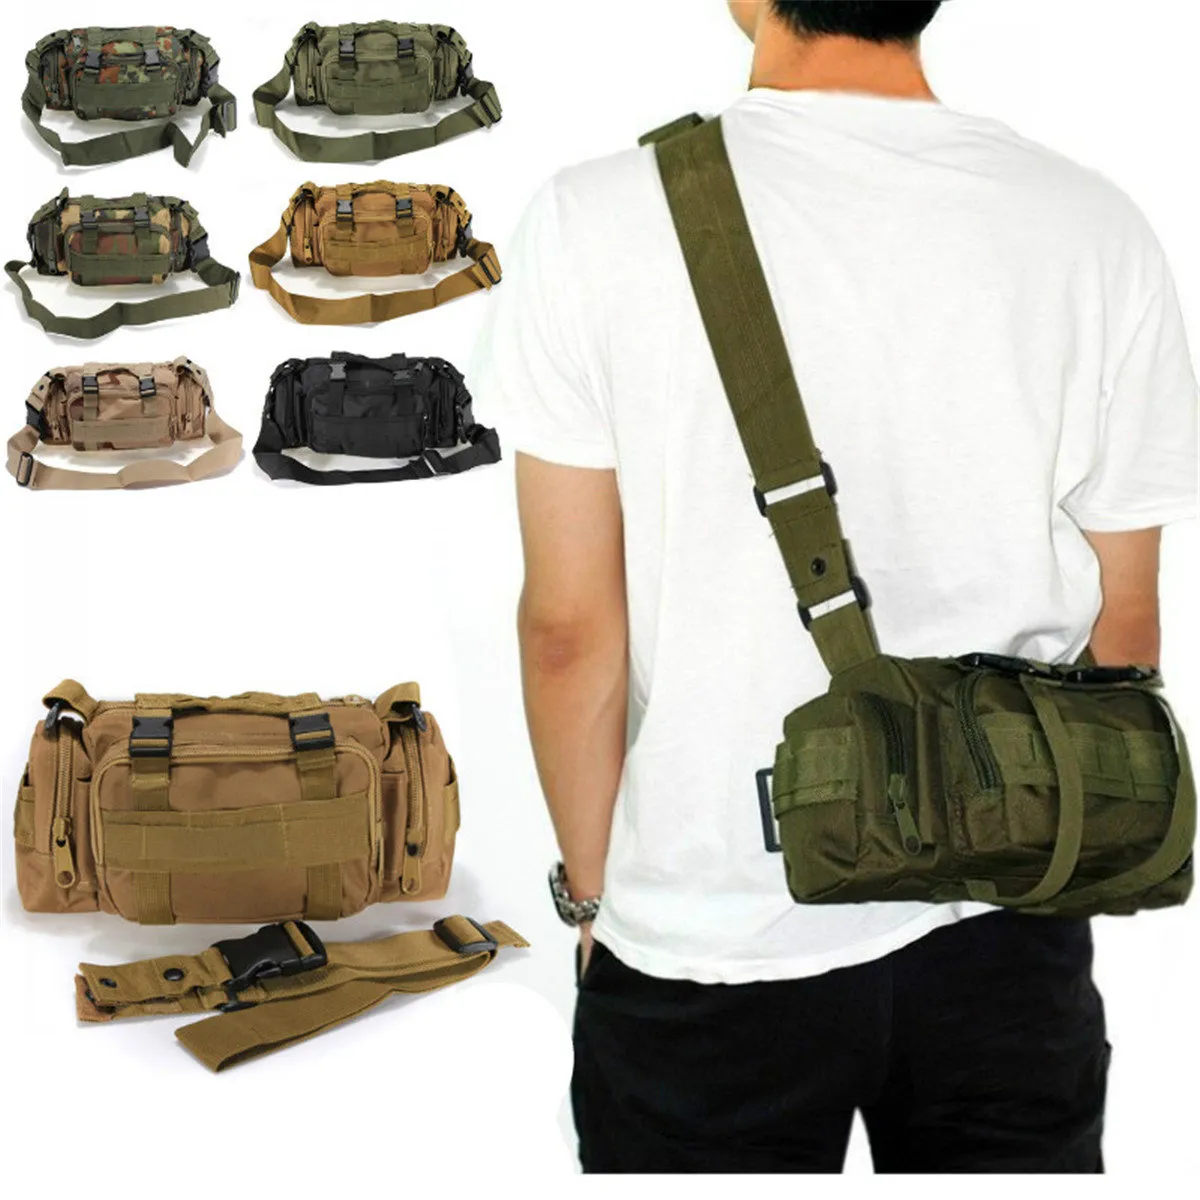 Sports de plein air Camouflage sac à dos sac à dos Camping randonnée taille sac Pack-option multicolore pour voyager avec de nombreuses poches